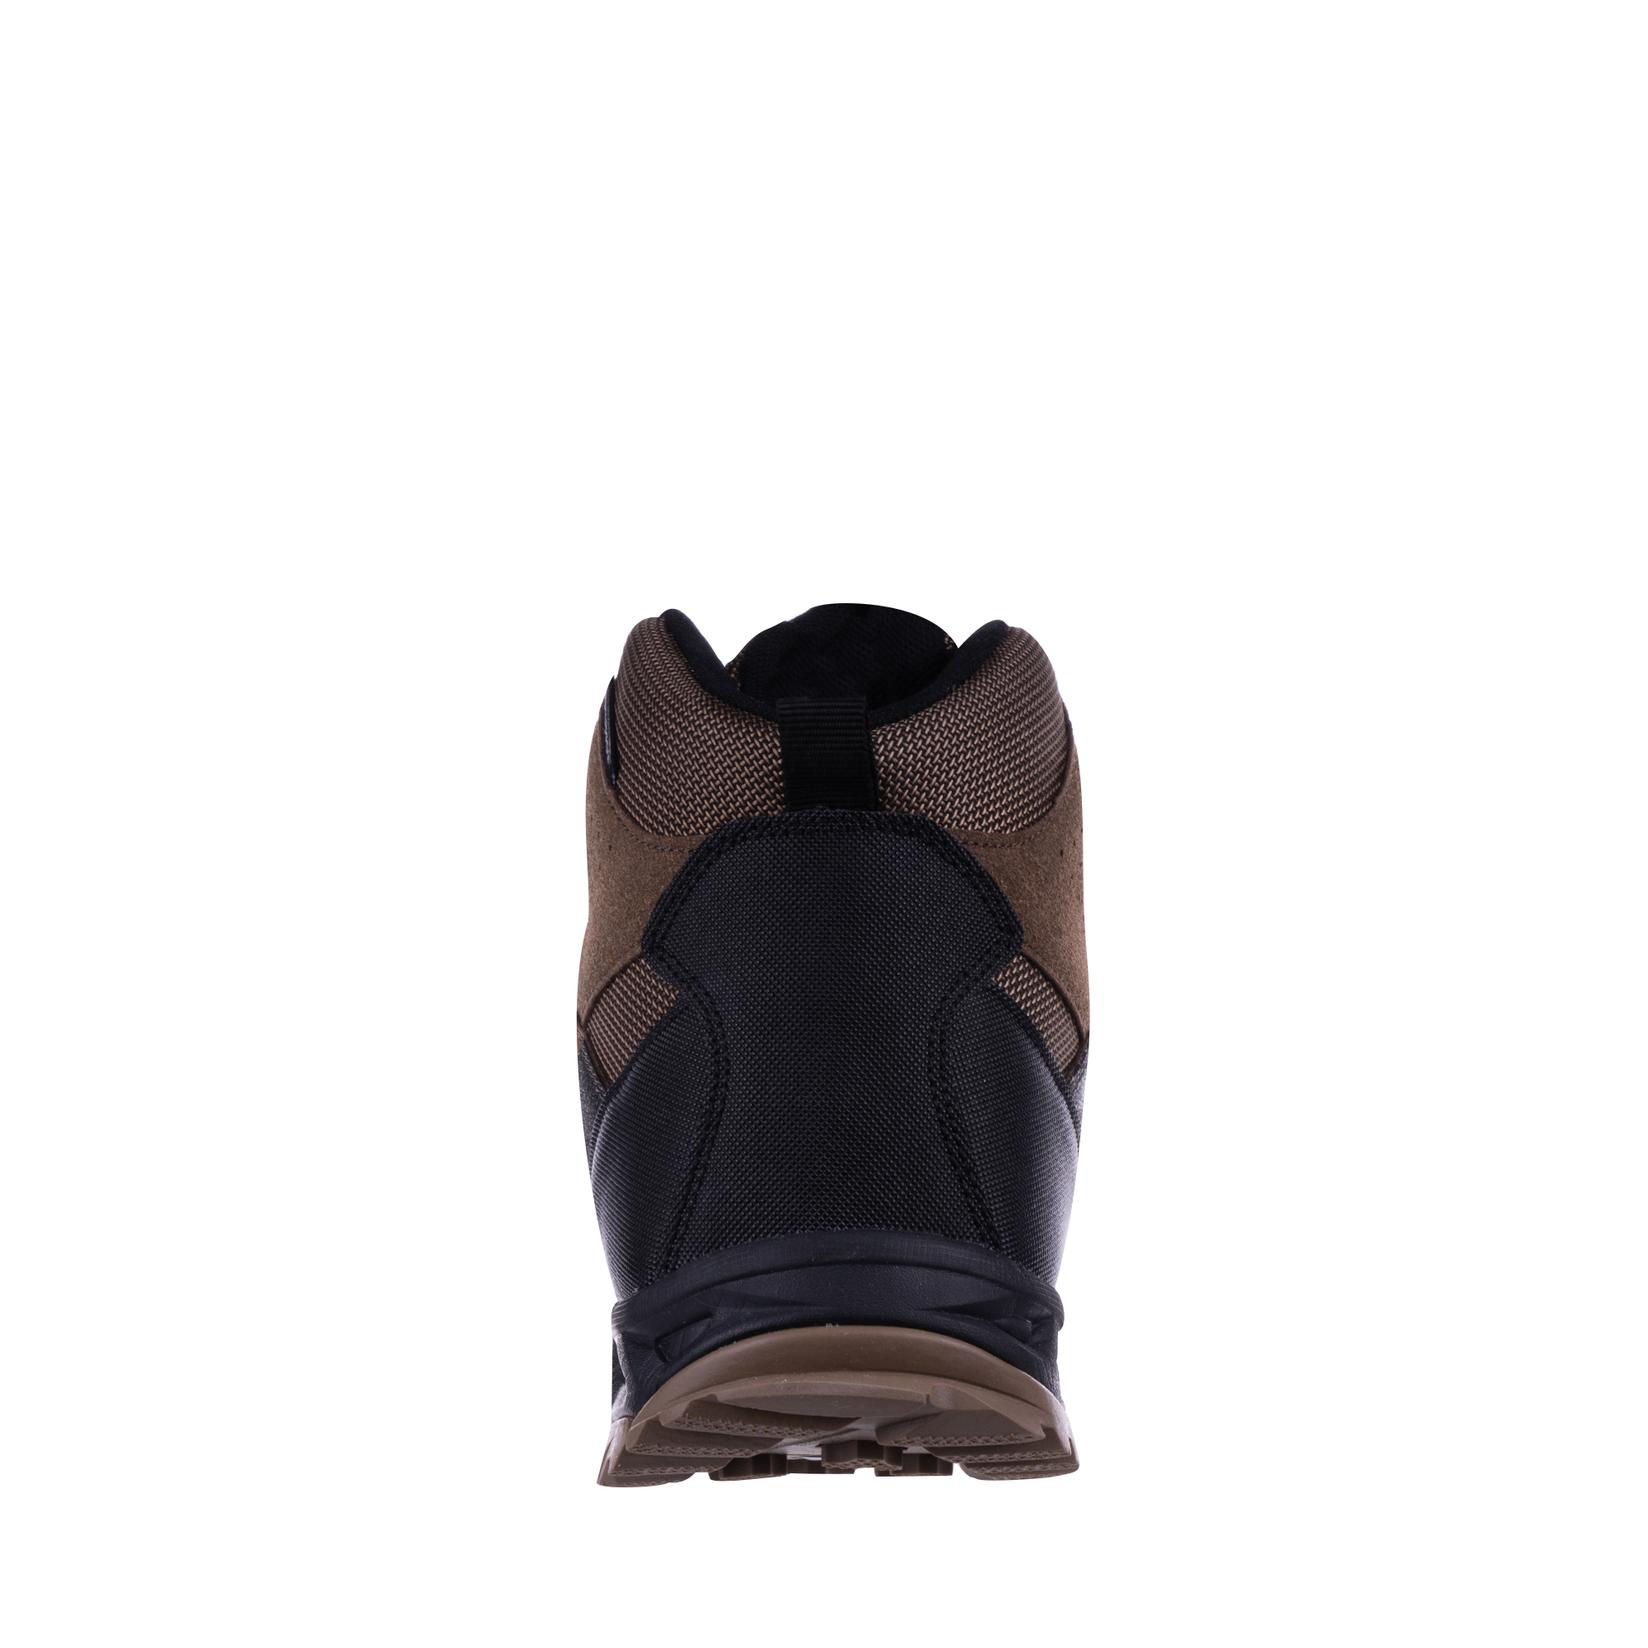 Selected image for DIFFERENTE WATERPROOF Muške cipele N75504, Braon